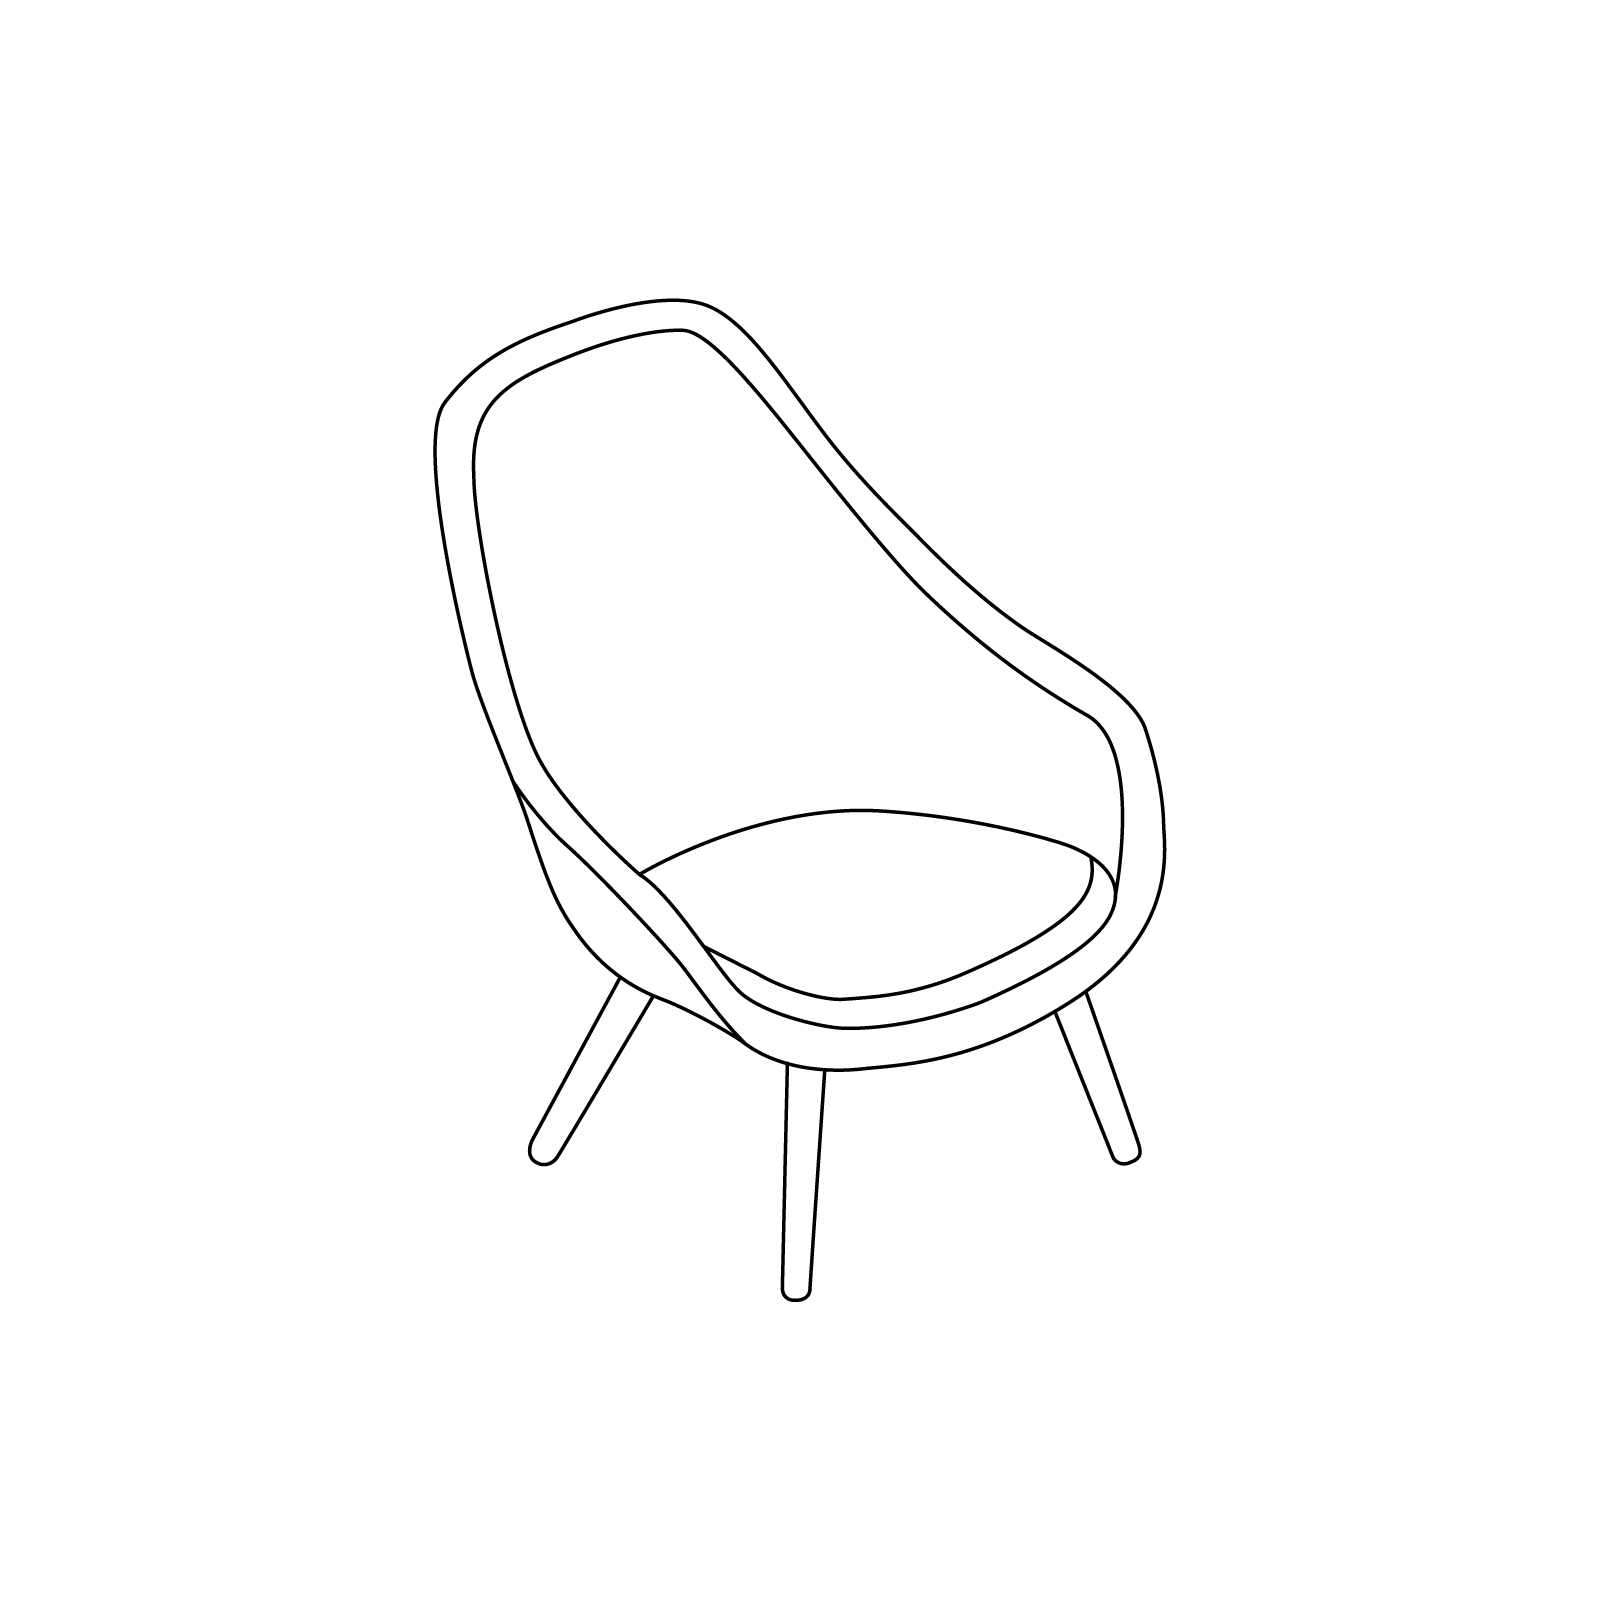 Um desenho de linha - About A Lounge Chair – Encosto alto – Base de madeira maciça com 4 pernas (AAL92)